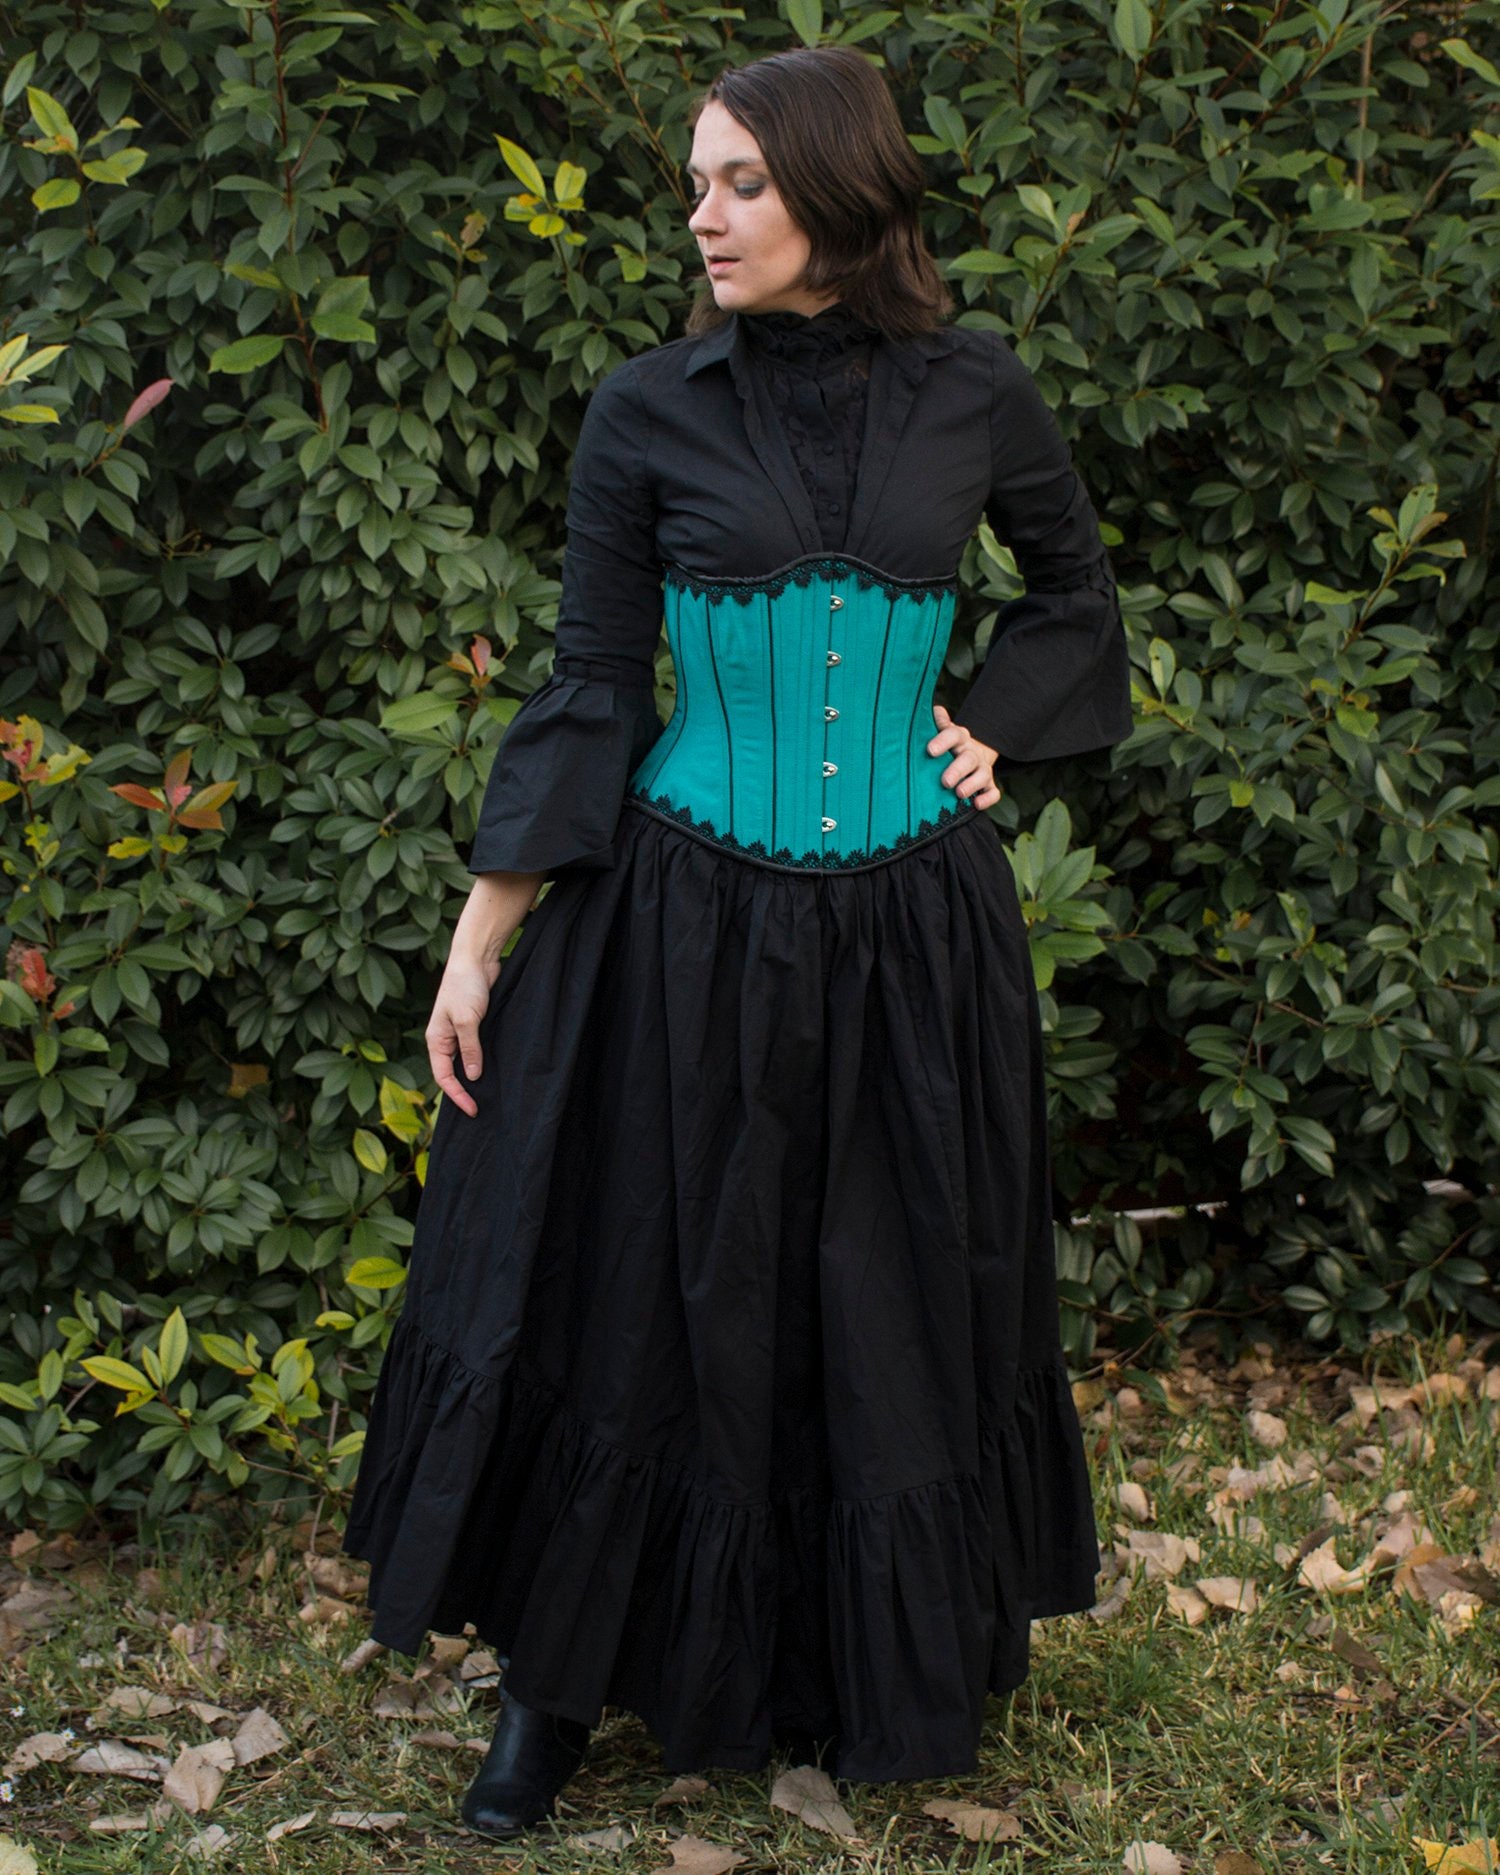 Black Cotton Ruffle Underskirt Cotton Petticoat | Etsy